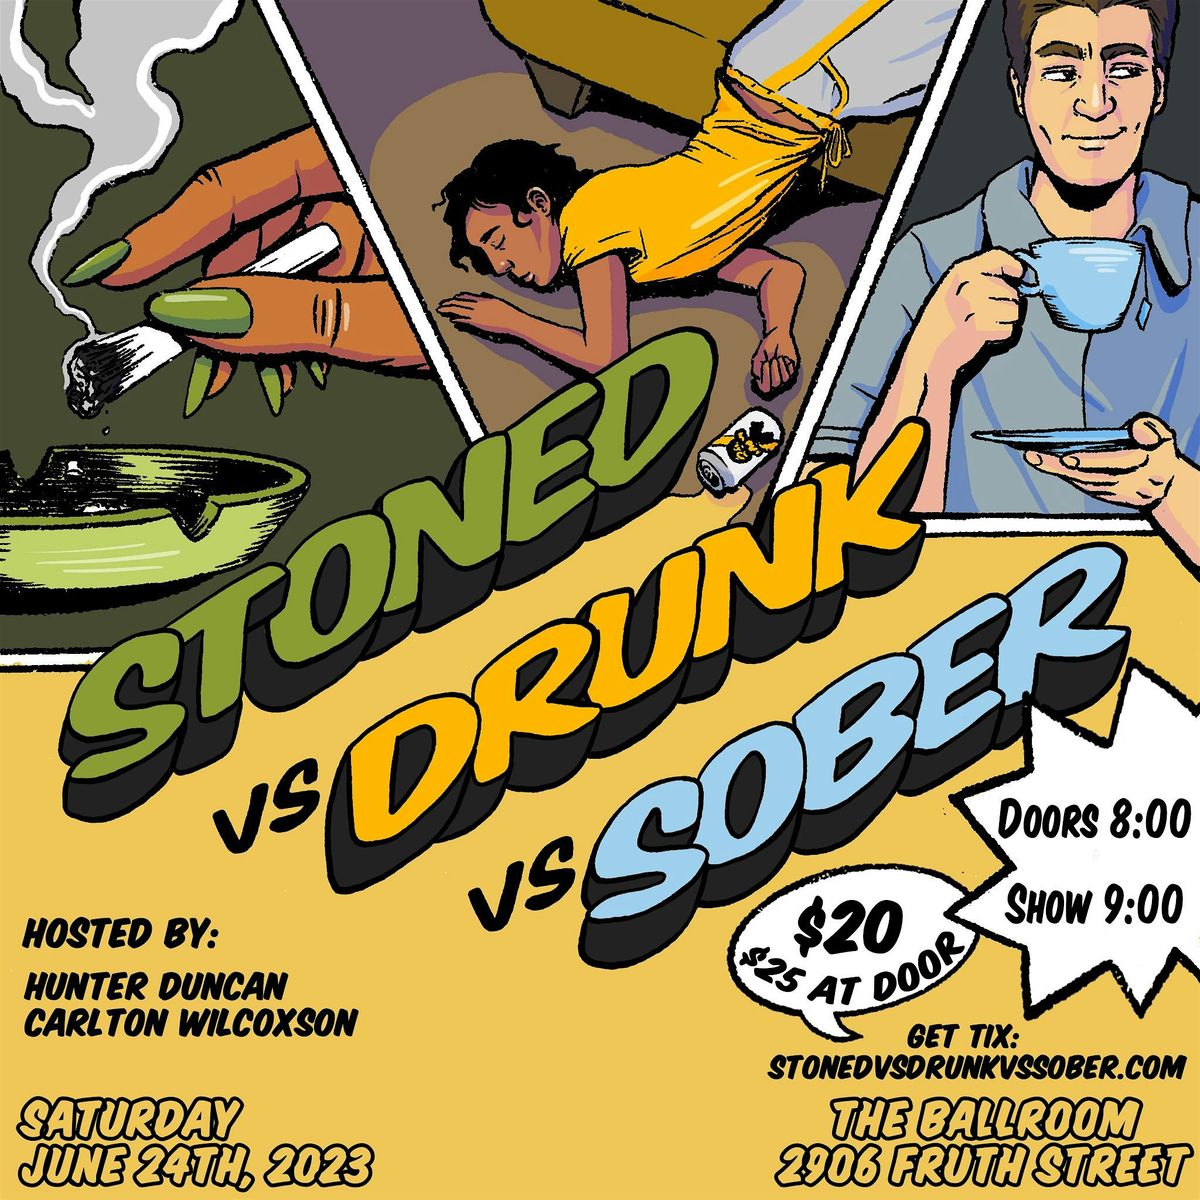 Stoned vs Drunk vs Sober: DECEMBER BASH!